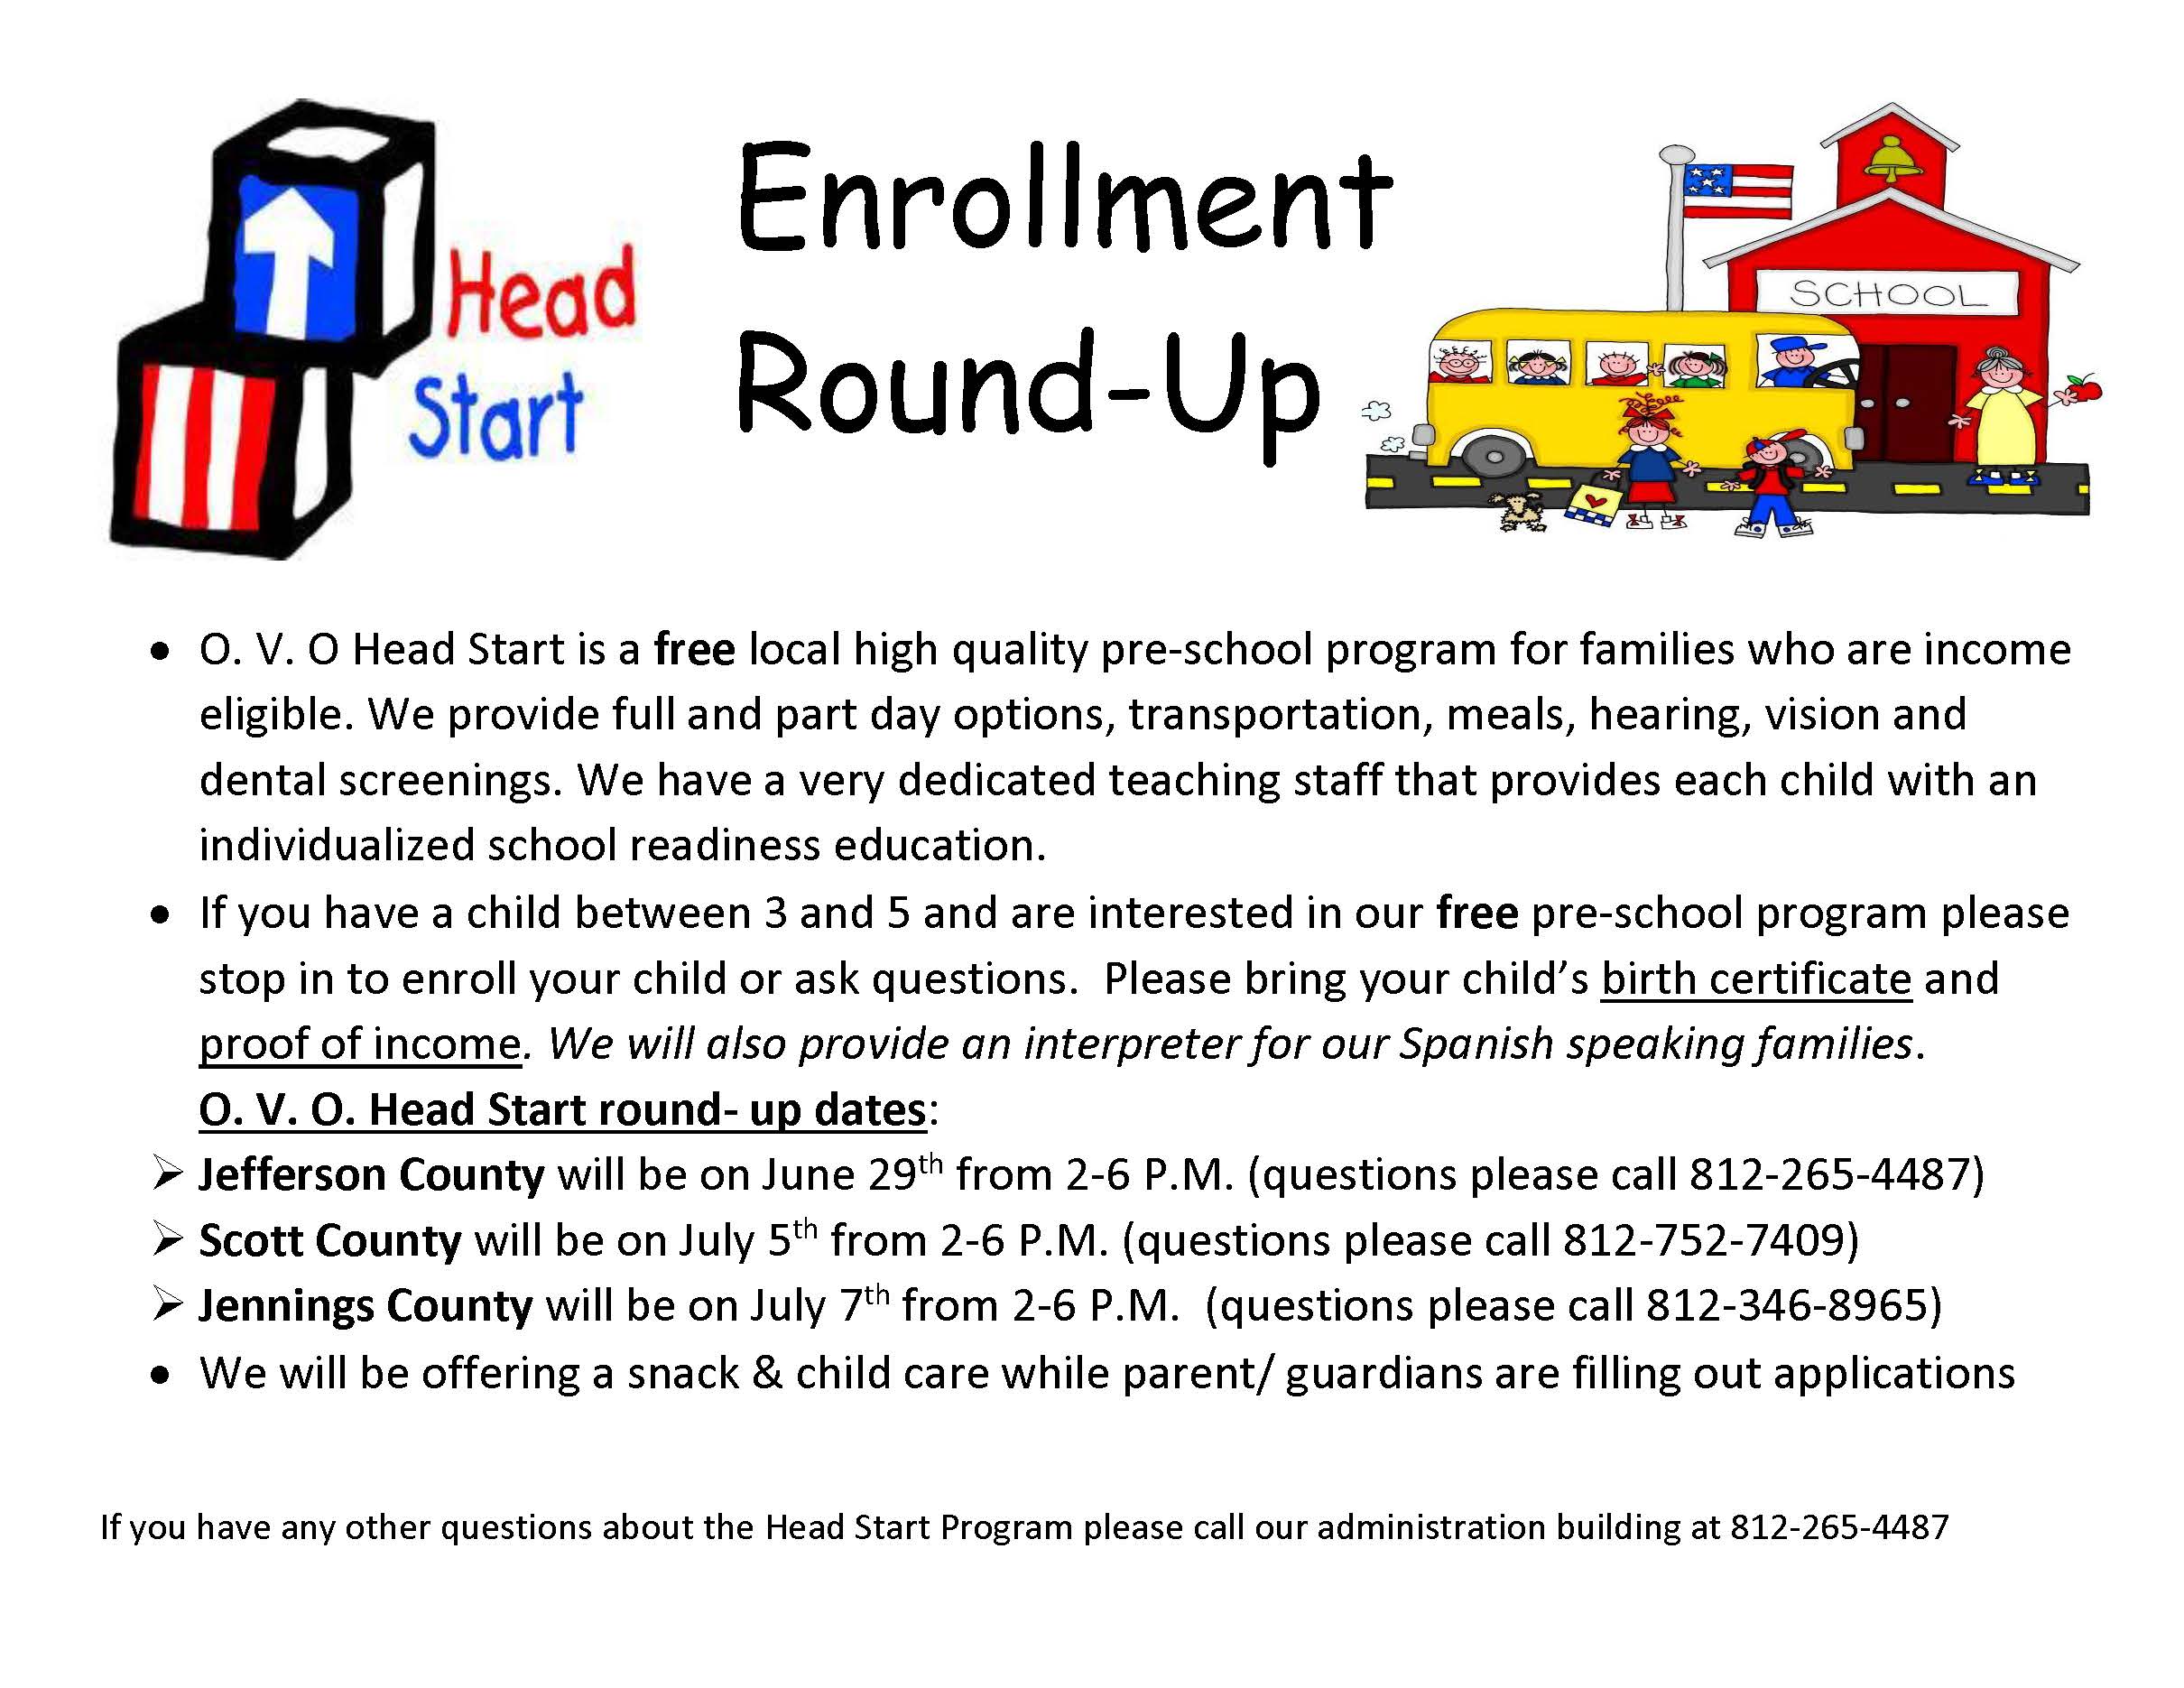 Enrollment Round-Up 2016